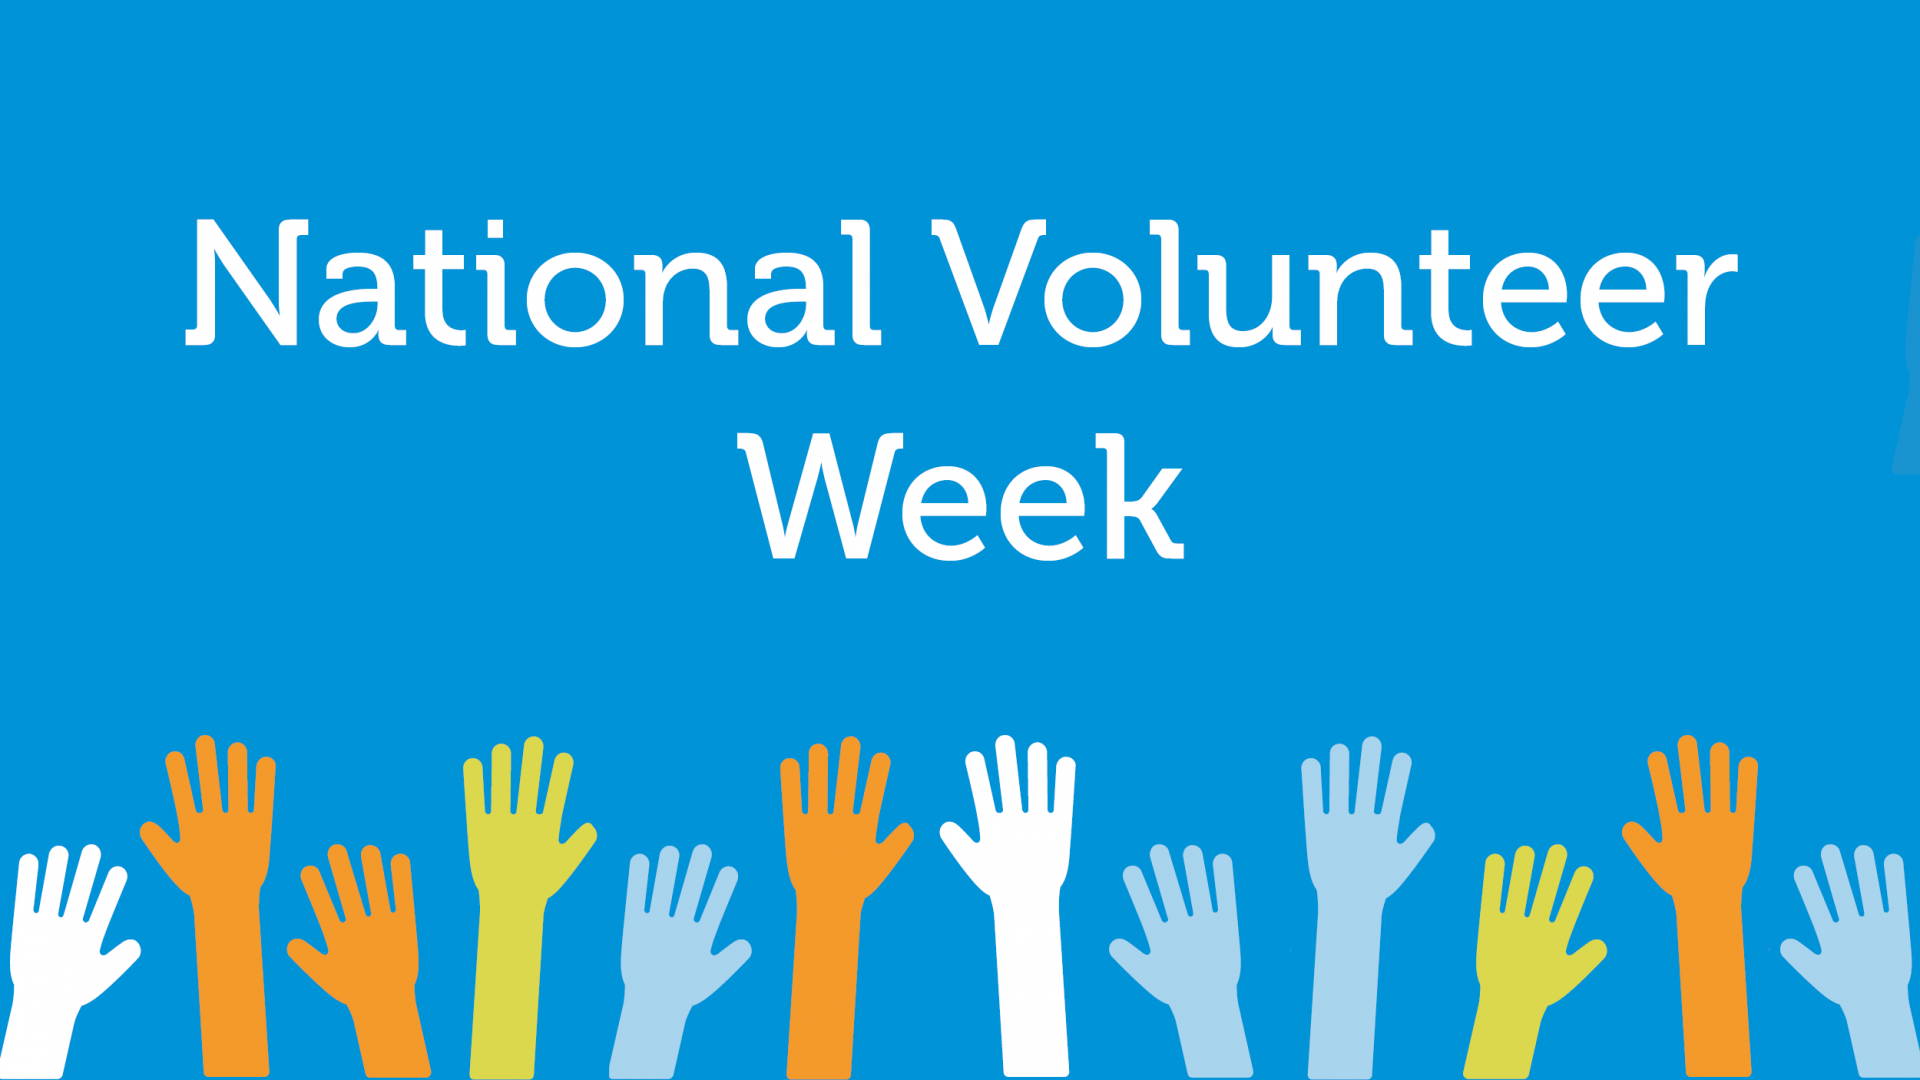 National Volunteer Week Thank You!